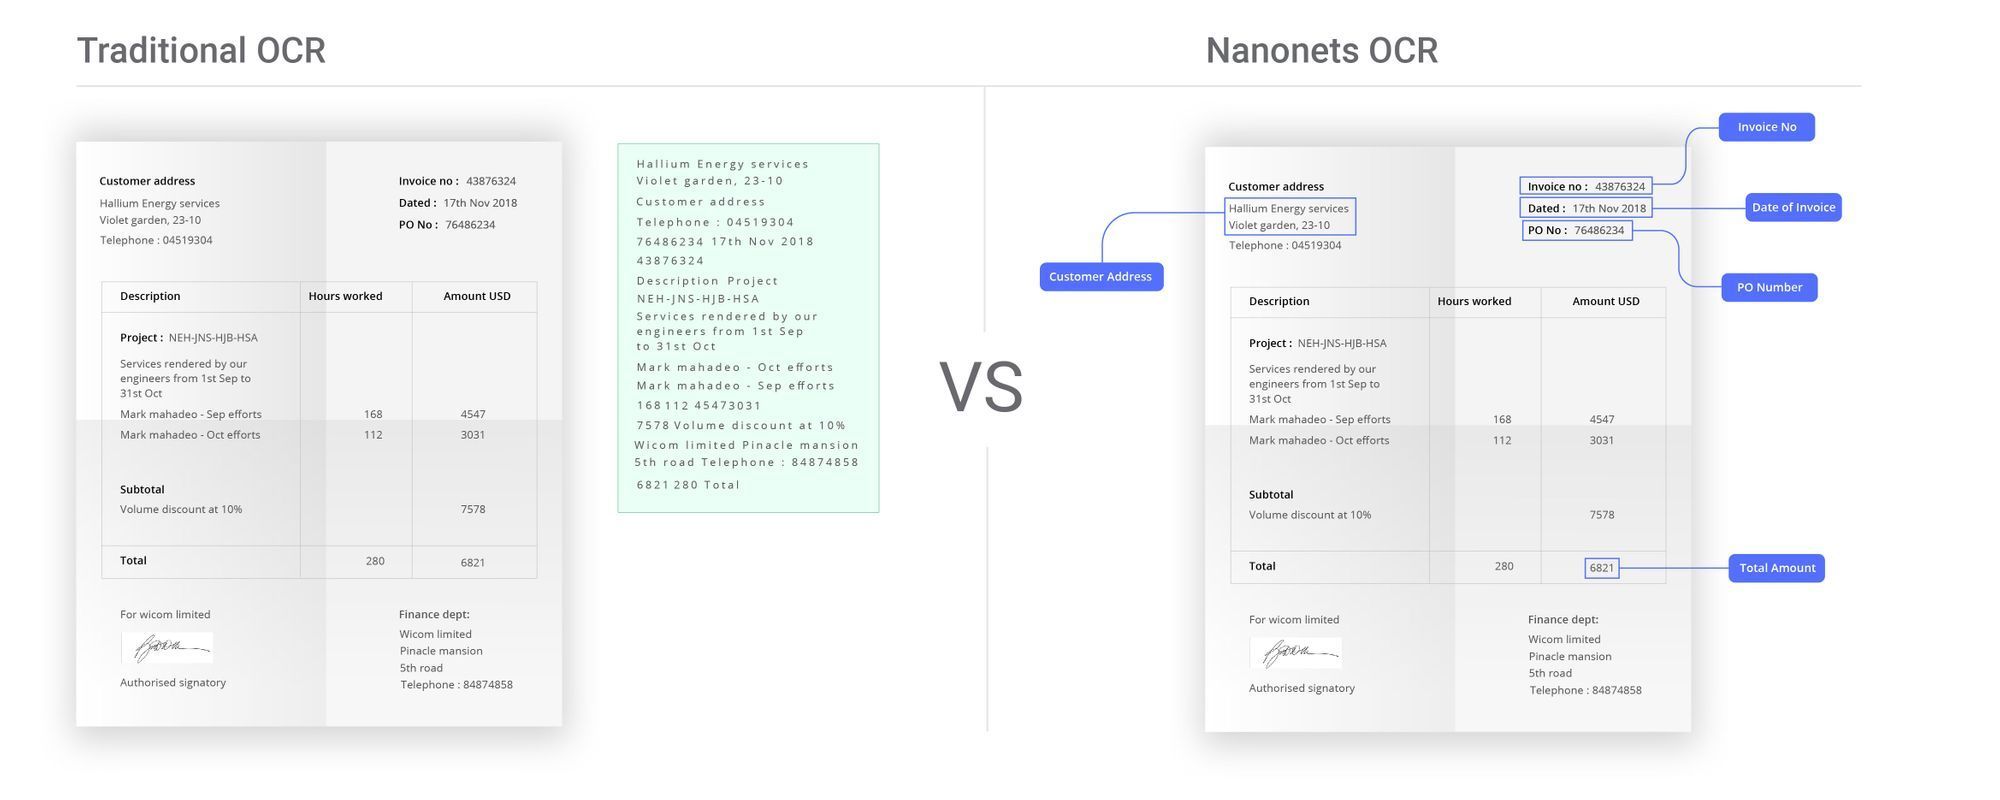 Afbeelding die de voordelen illustreert van Nanonets OCR voor de automatisering van orderinvoer vergeleken met traditionele OCR-tools